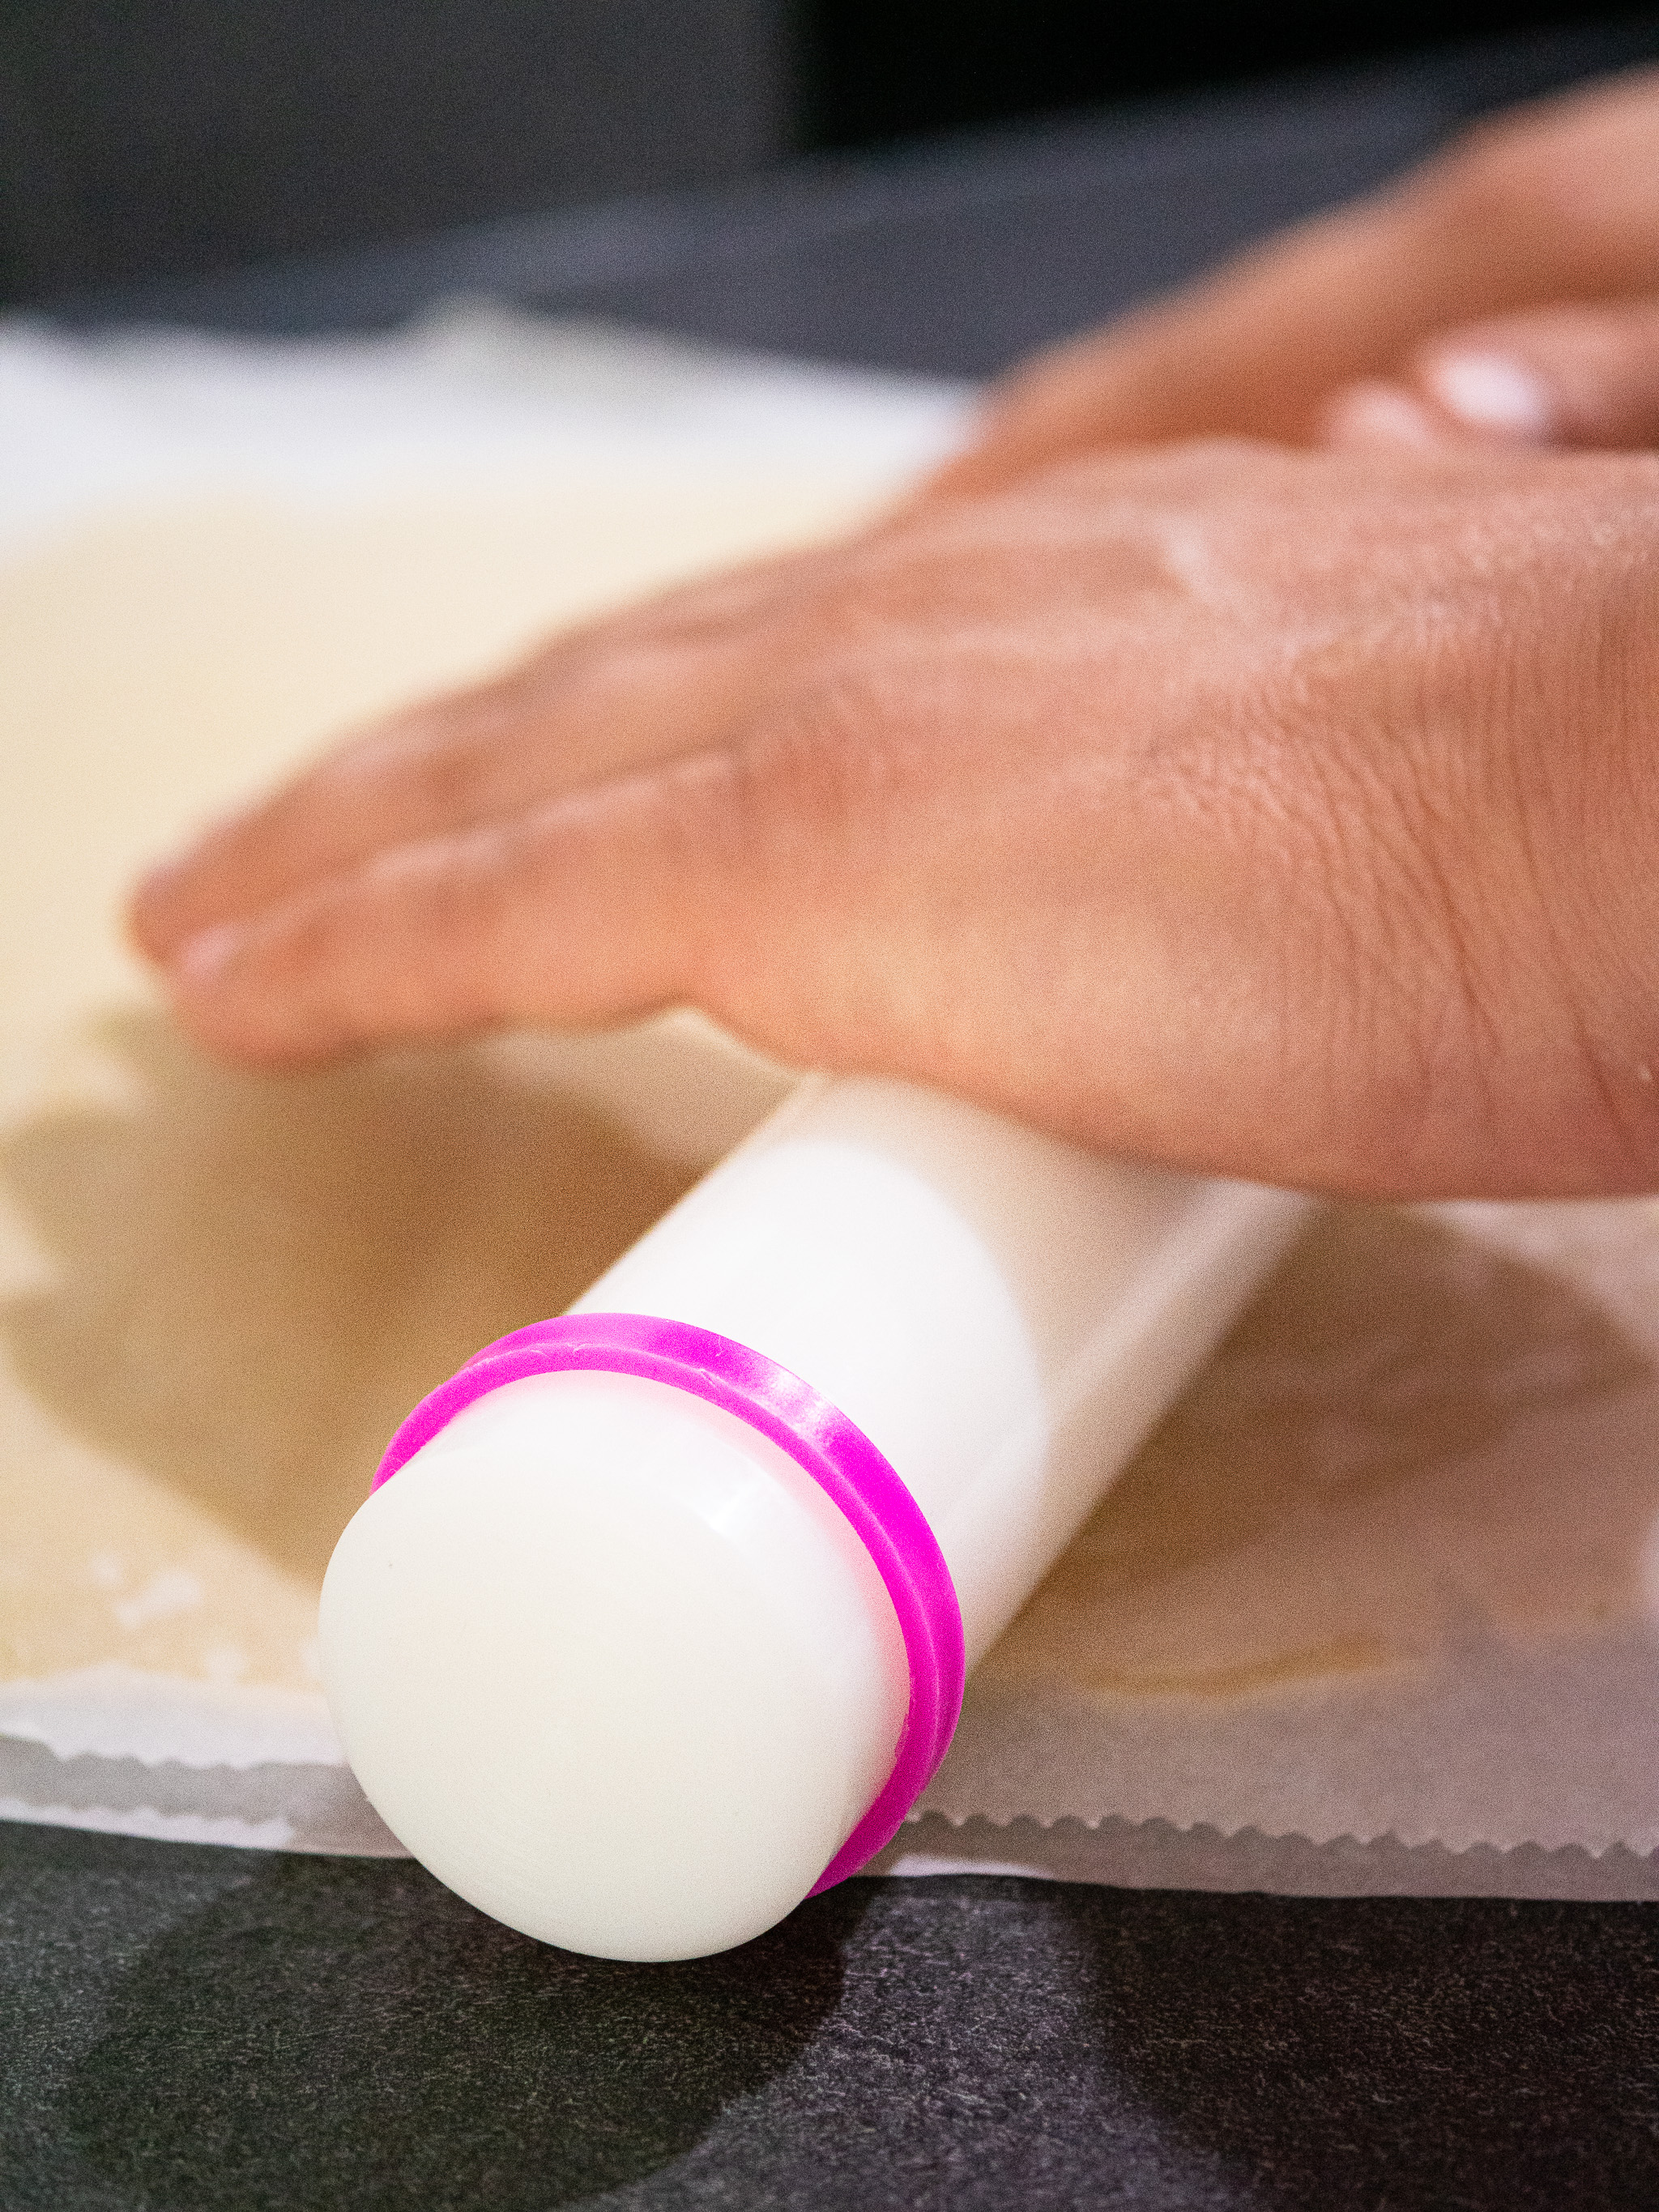 Jérémy utilise un rouleau à pâtisserie avec des réglettes permettant d'abaisser sa pâte sablée vegan de façon régulière